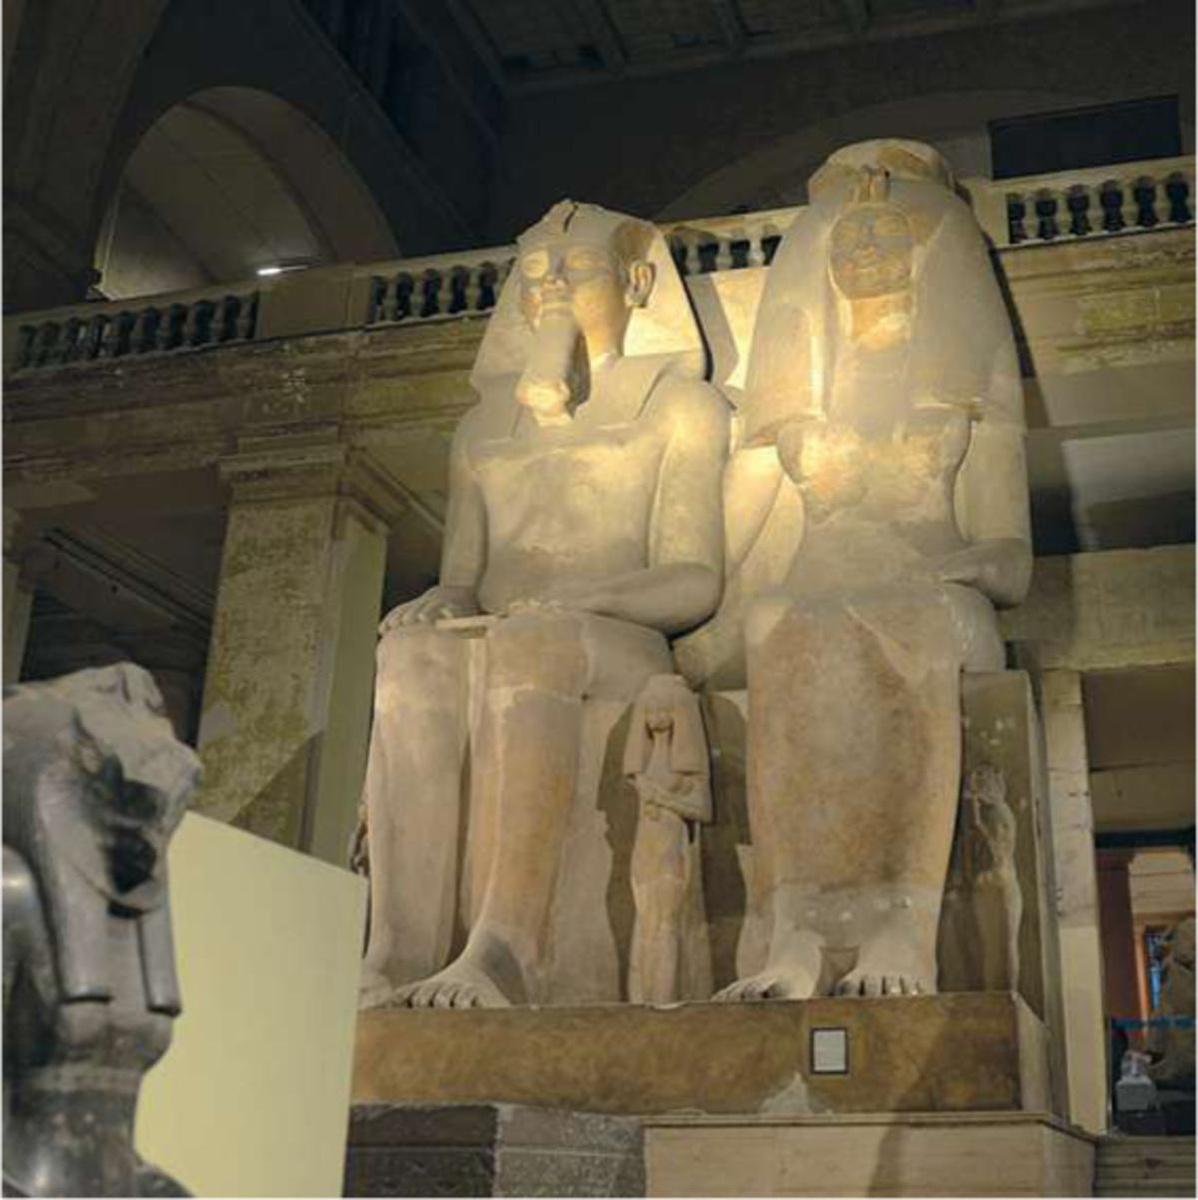 Quand le pharaon va, tout le pays va. D'où la nécessité de placer dans tout le royaume des statues du roi et de sa famille souvent plus grandes que nature. Ici, Aménophis III, neuvième pharaon de la XVIIIe dynastie, avec sa femme Tiyi et leurs trois filles.